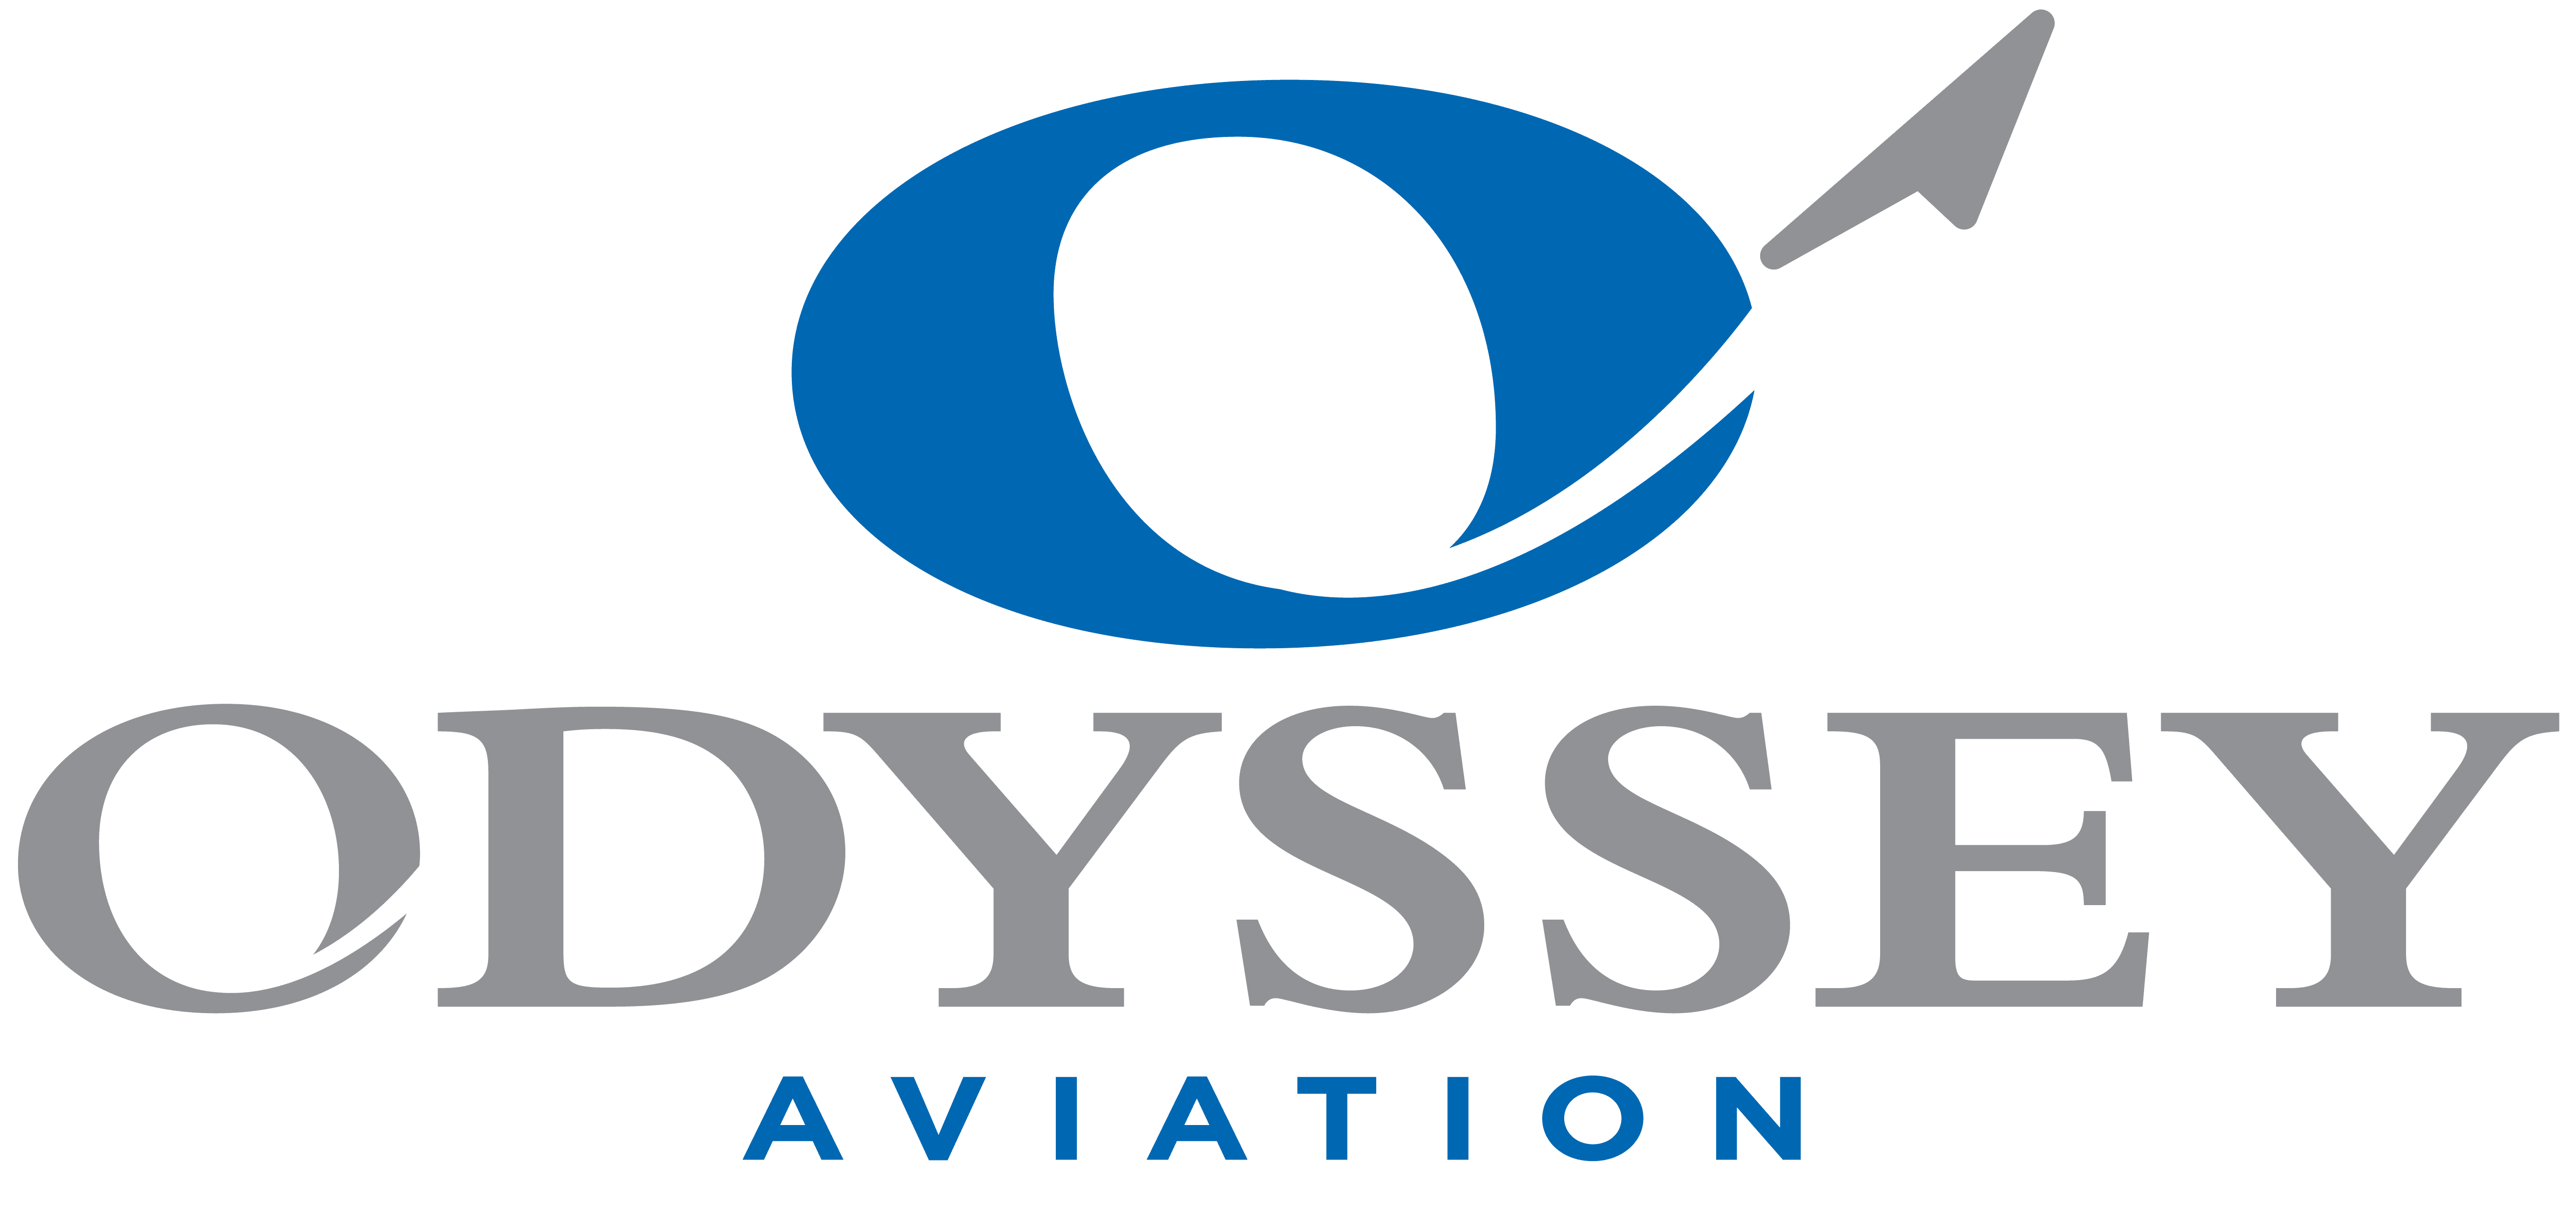 OdysseyAviation_Logo-01